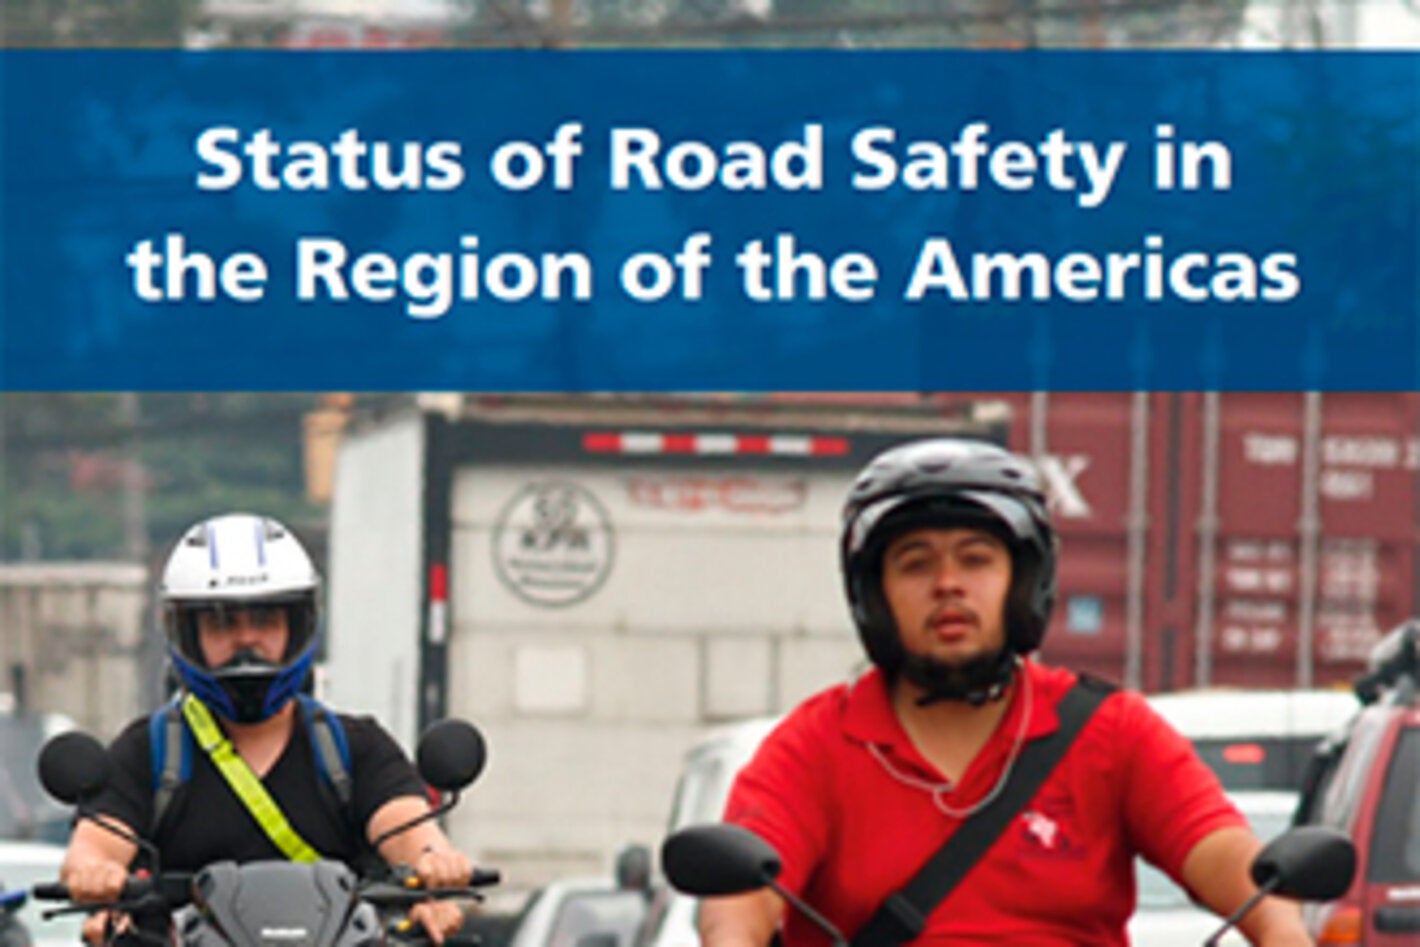 Segurança no trânsito - OPAS/OMS  Organização Pan-Americana da Saúde